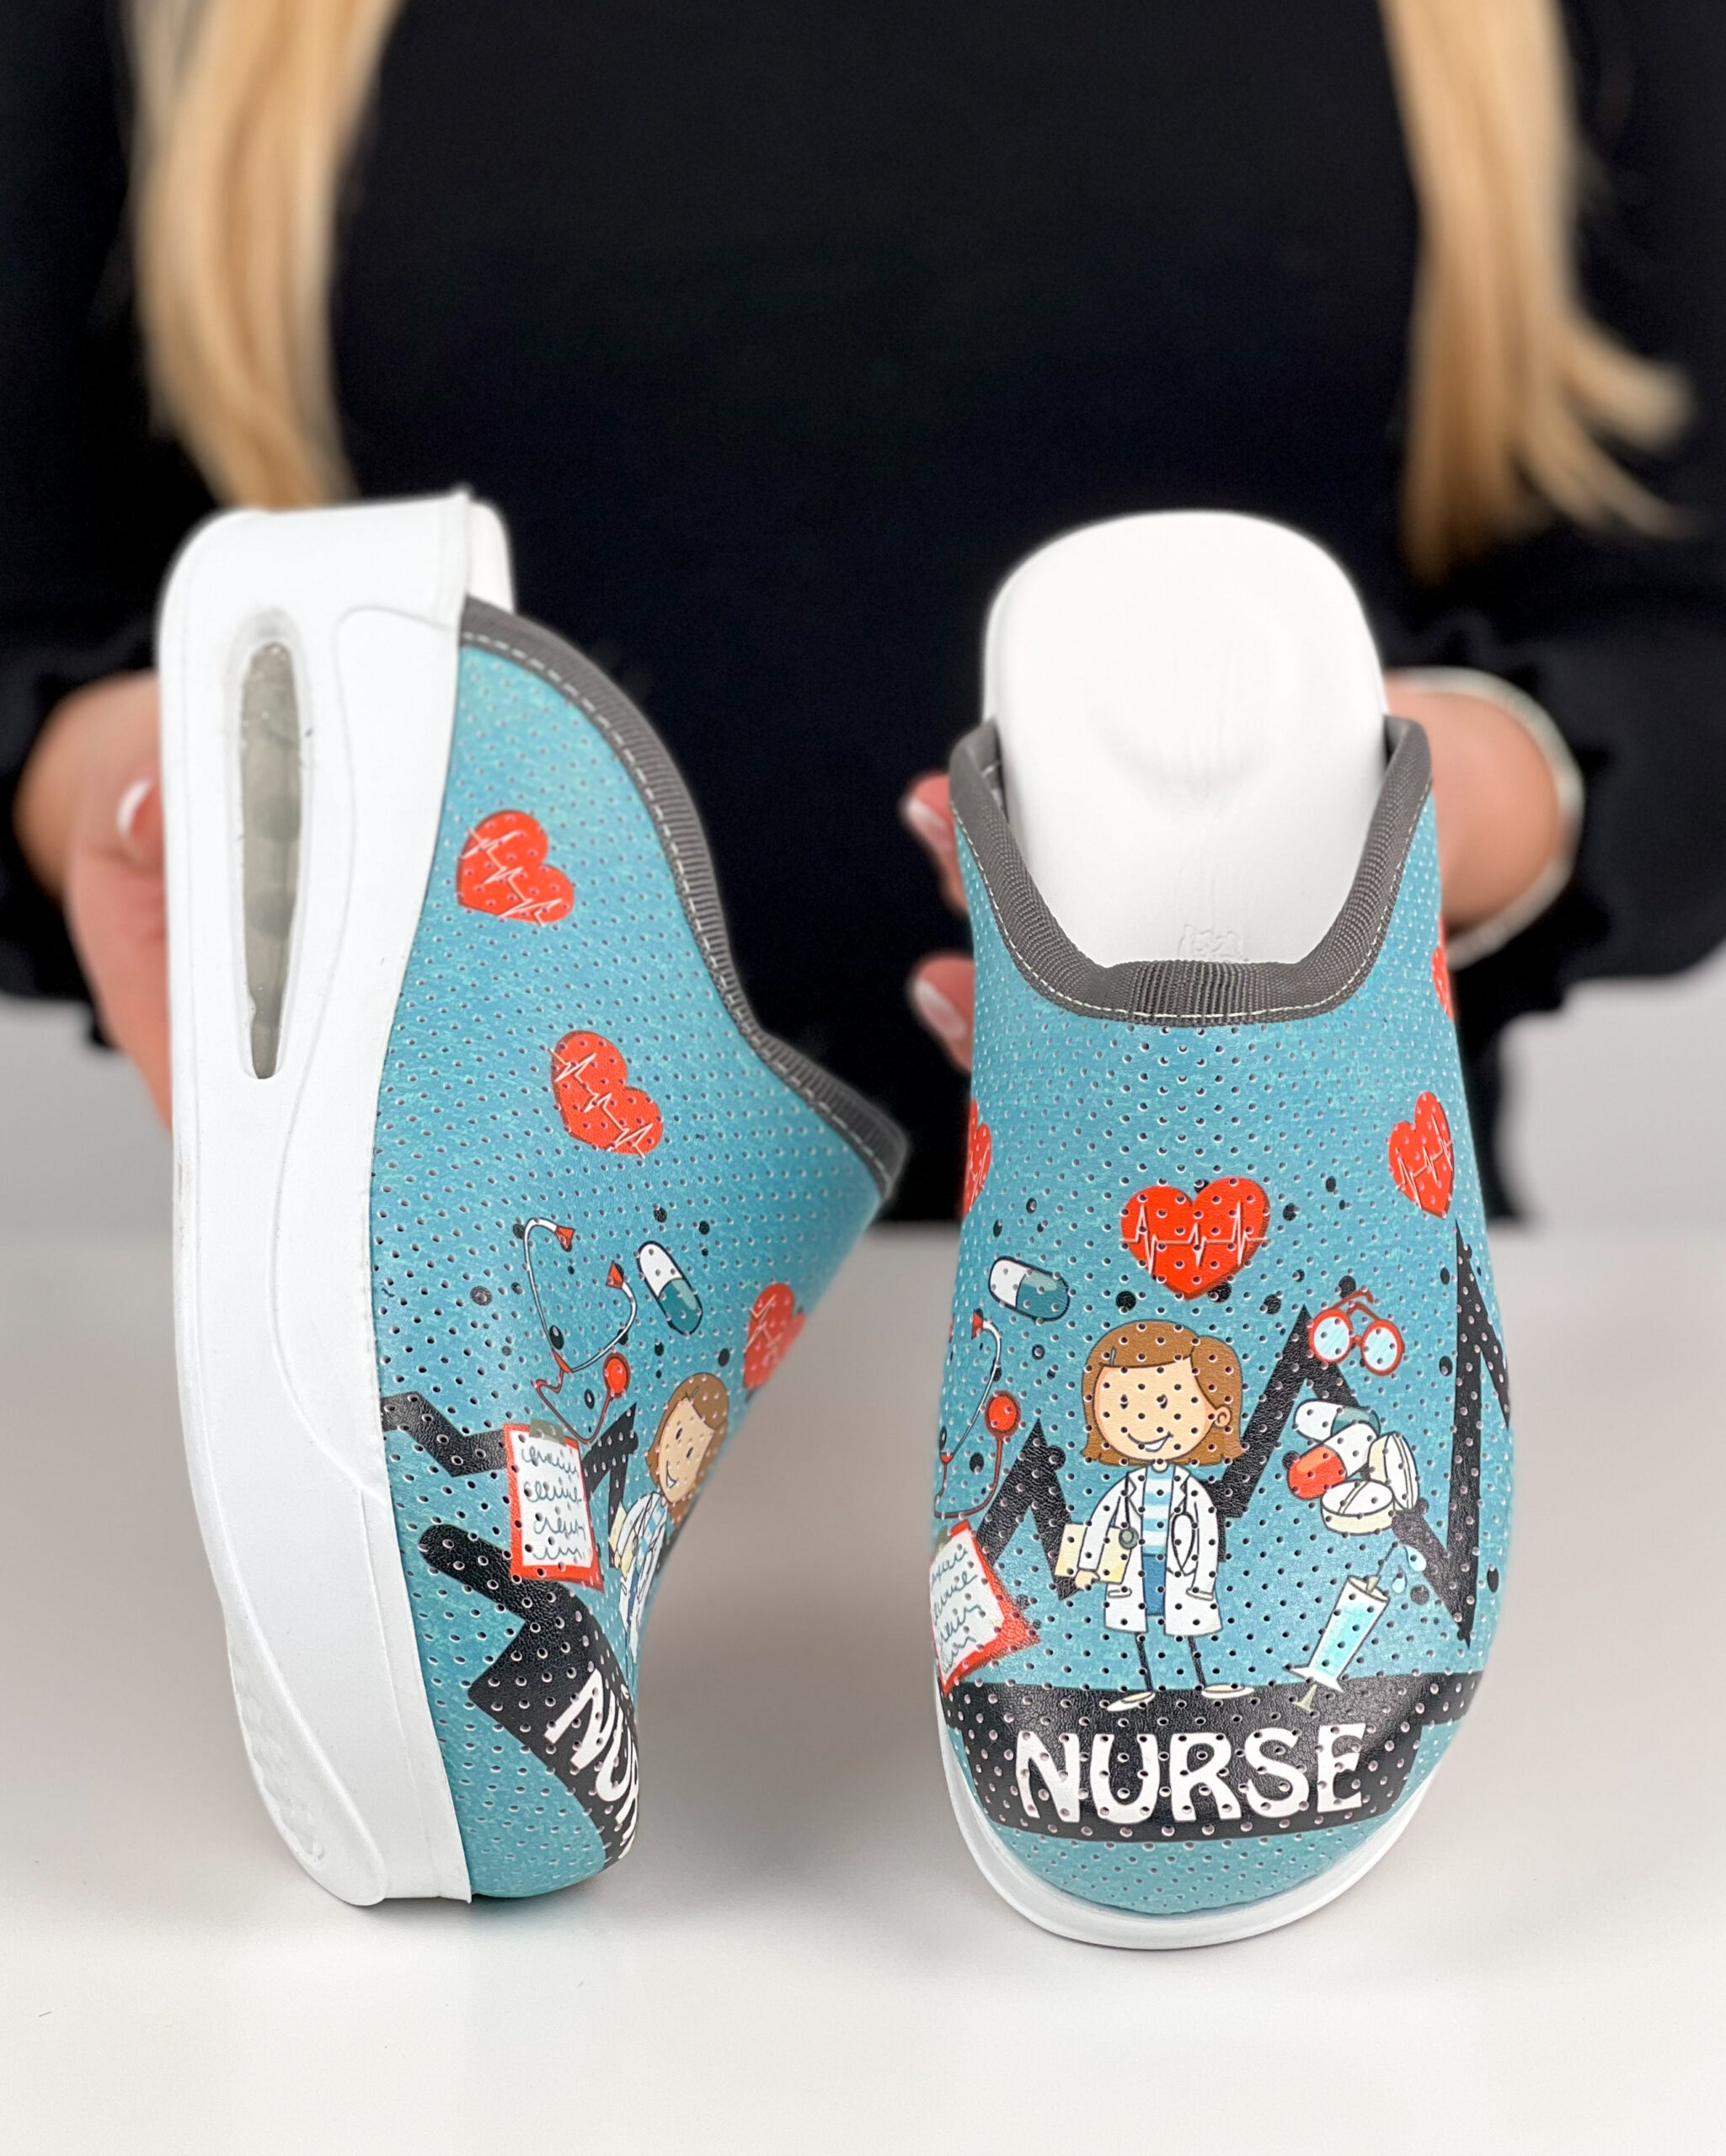 Miss Nurse